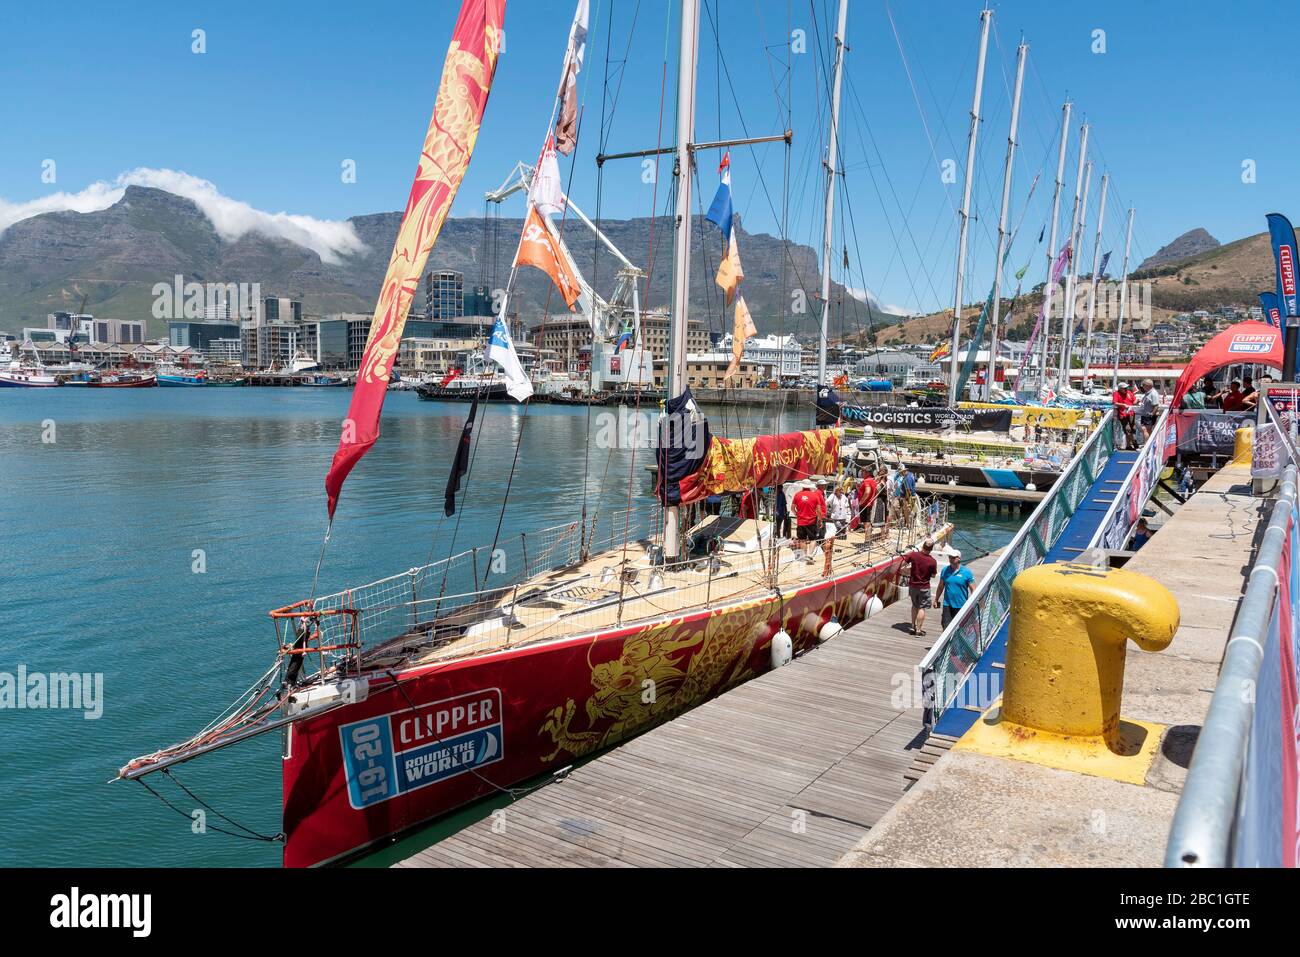 Le Cap, Afrique du Sud. 2019. Clipper fait le tour de l'activité de course mondiale dans le port de Cape Town. Qingdao avant le départ du port. Toile de fond de Table Mountain. Banque D'Images